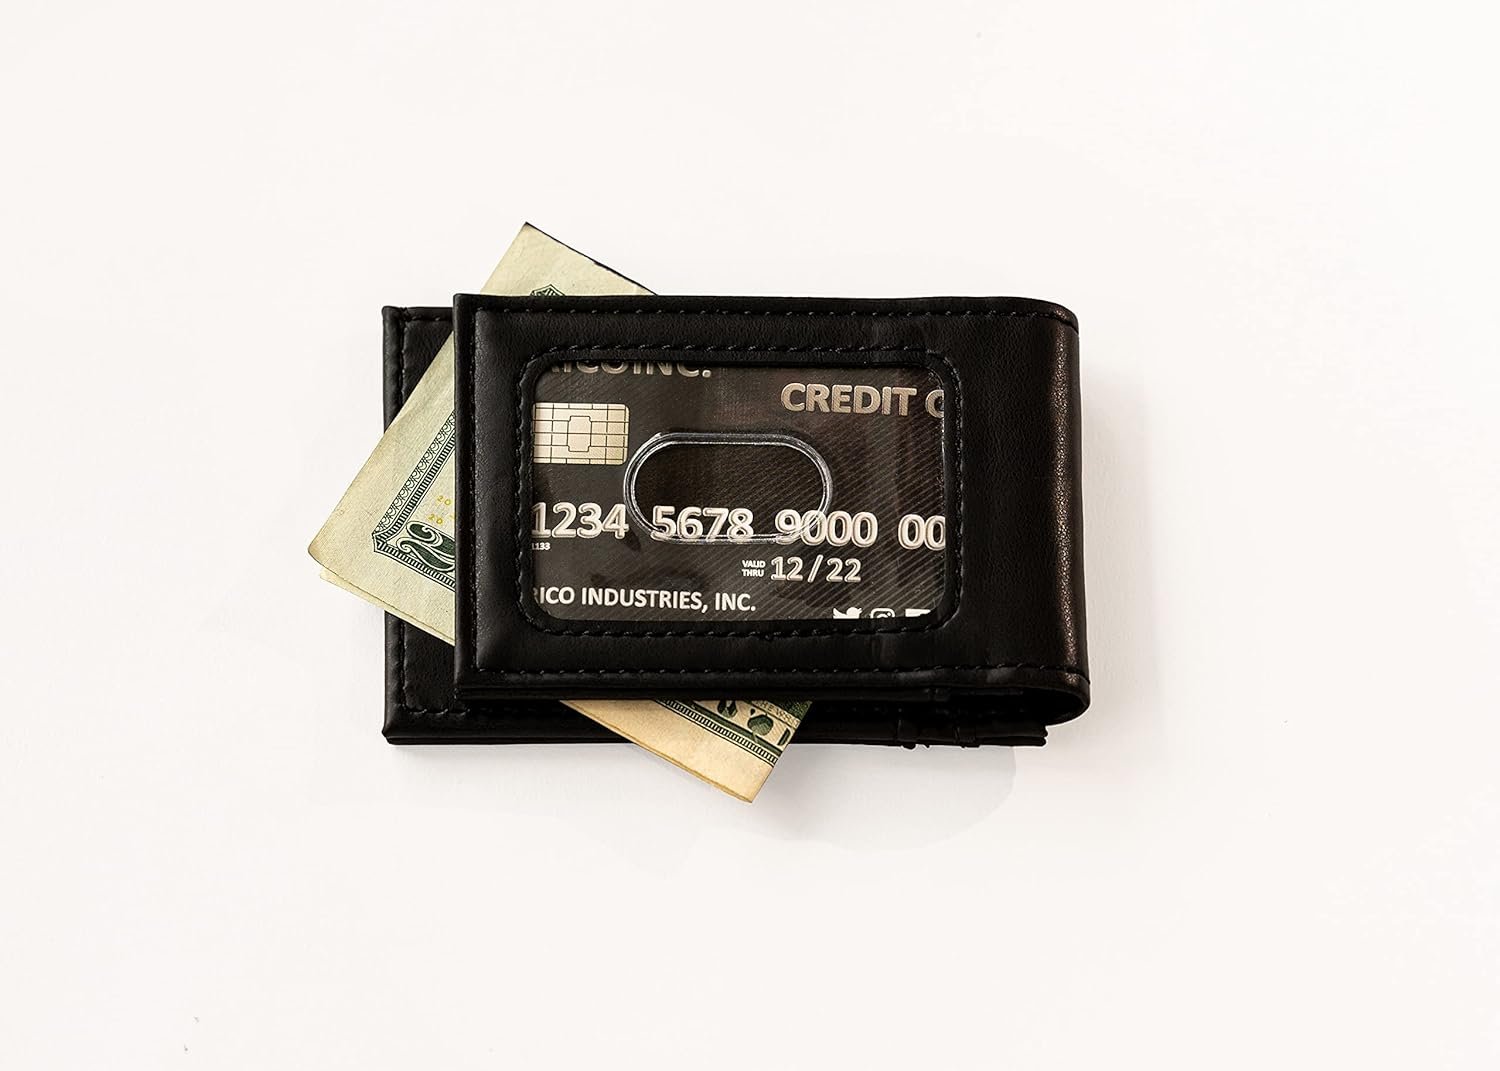 Chicago Bears Premium Black Leather Wallet, Front Pocket Magnetic Money Clip, Laser Engraved, Vegan